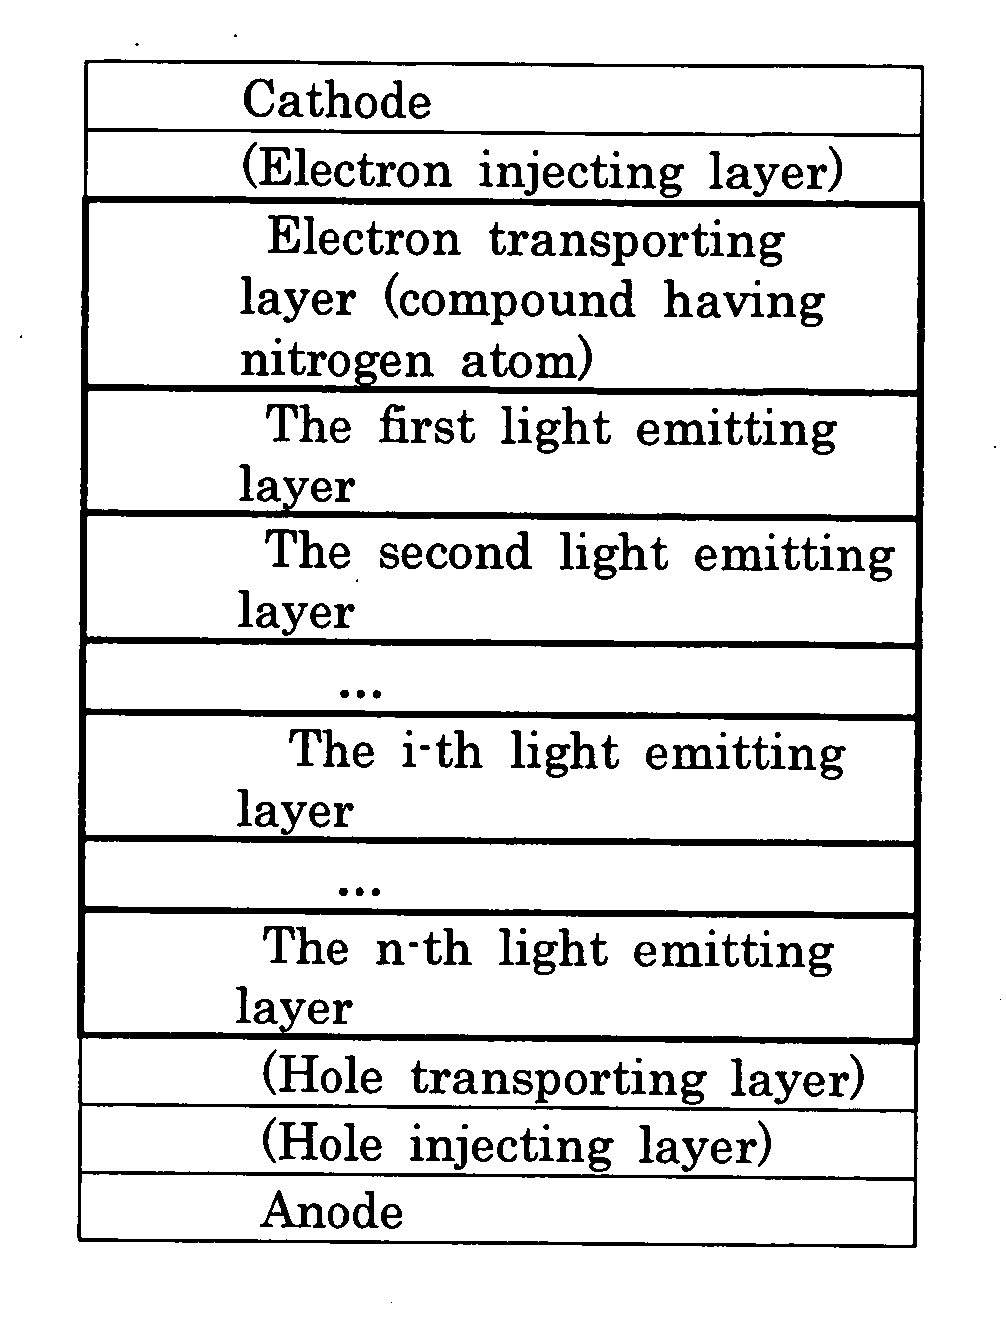 White organic electroluminescence device